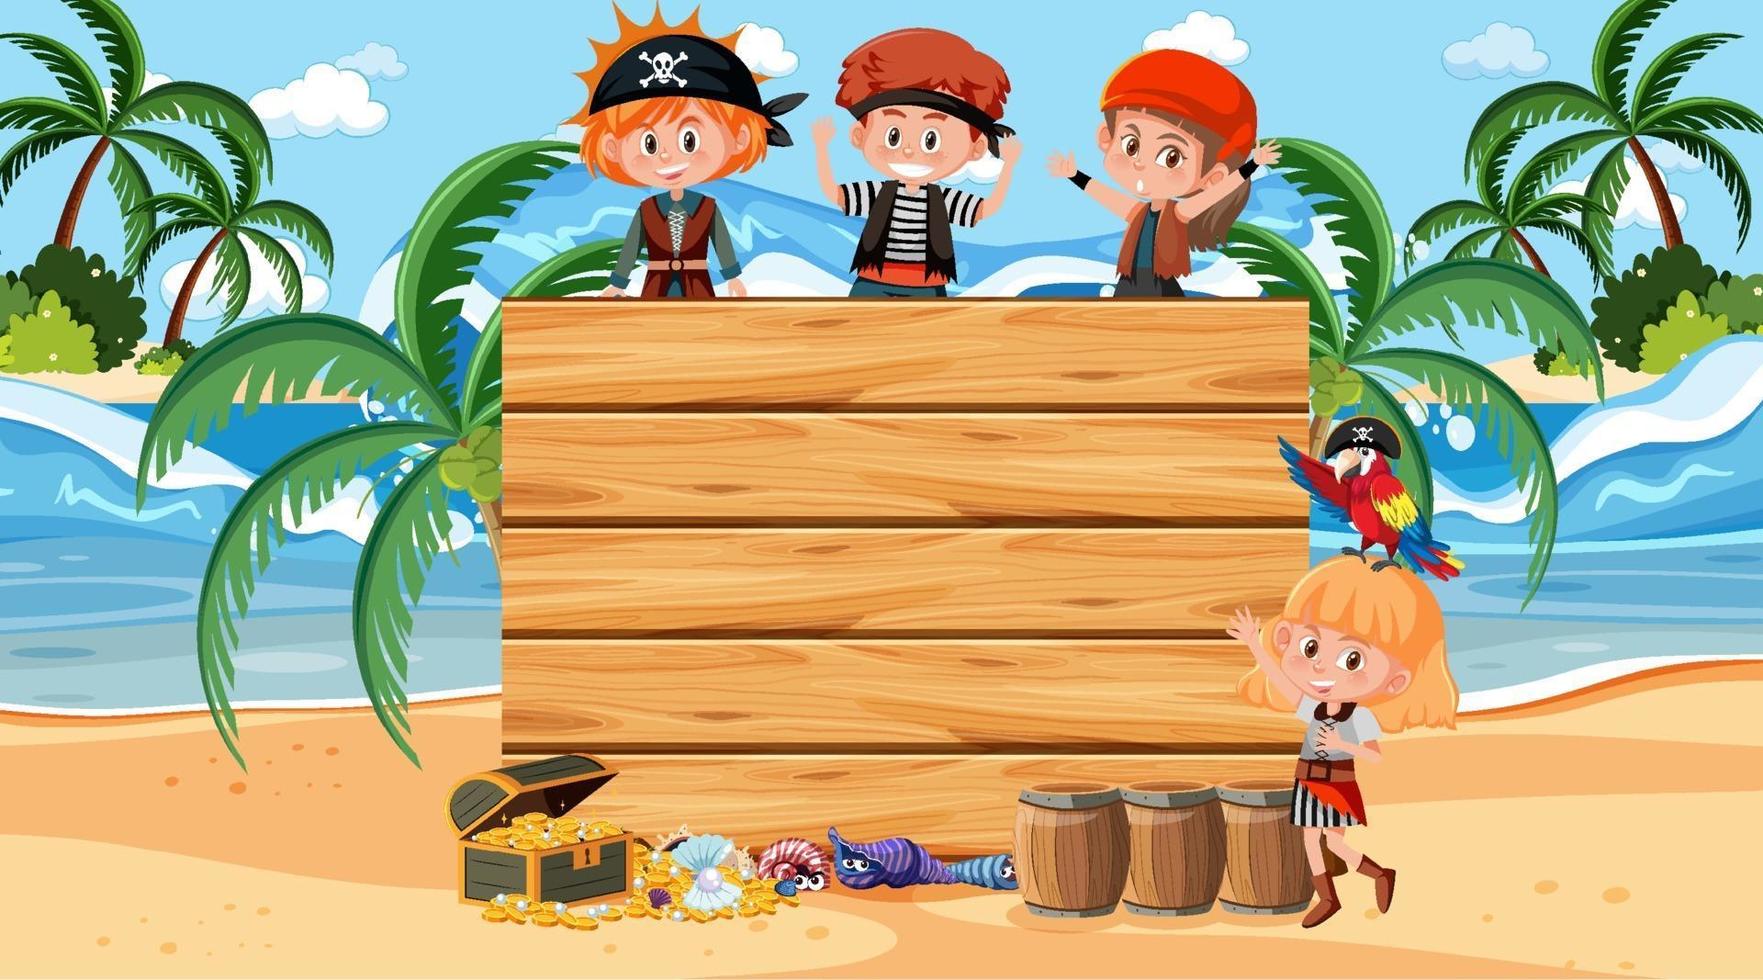 crianças piratas na cena diurna da praia com uma placa de madeira vazia vetor